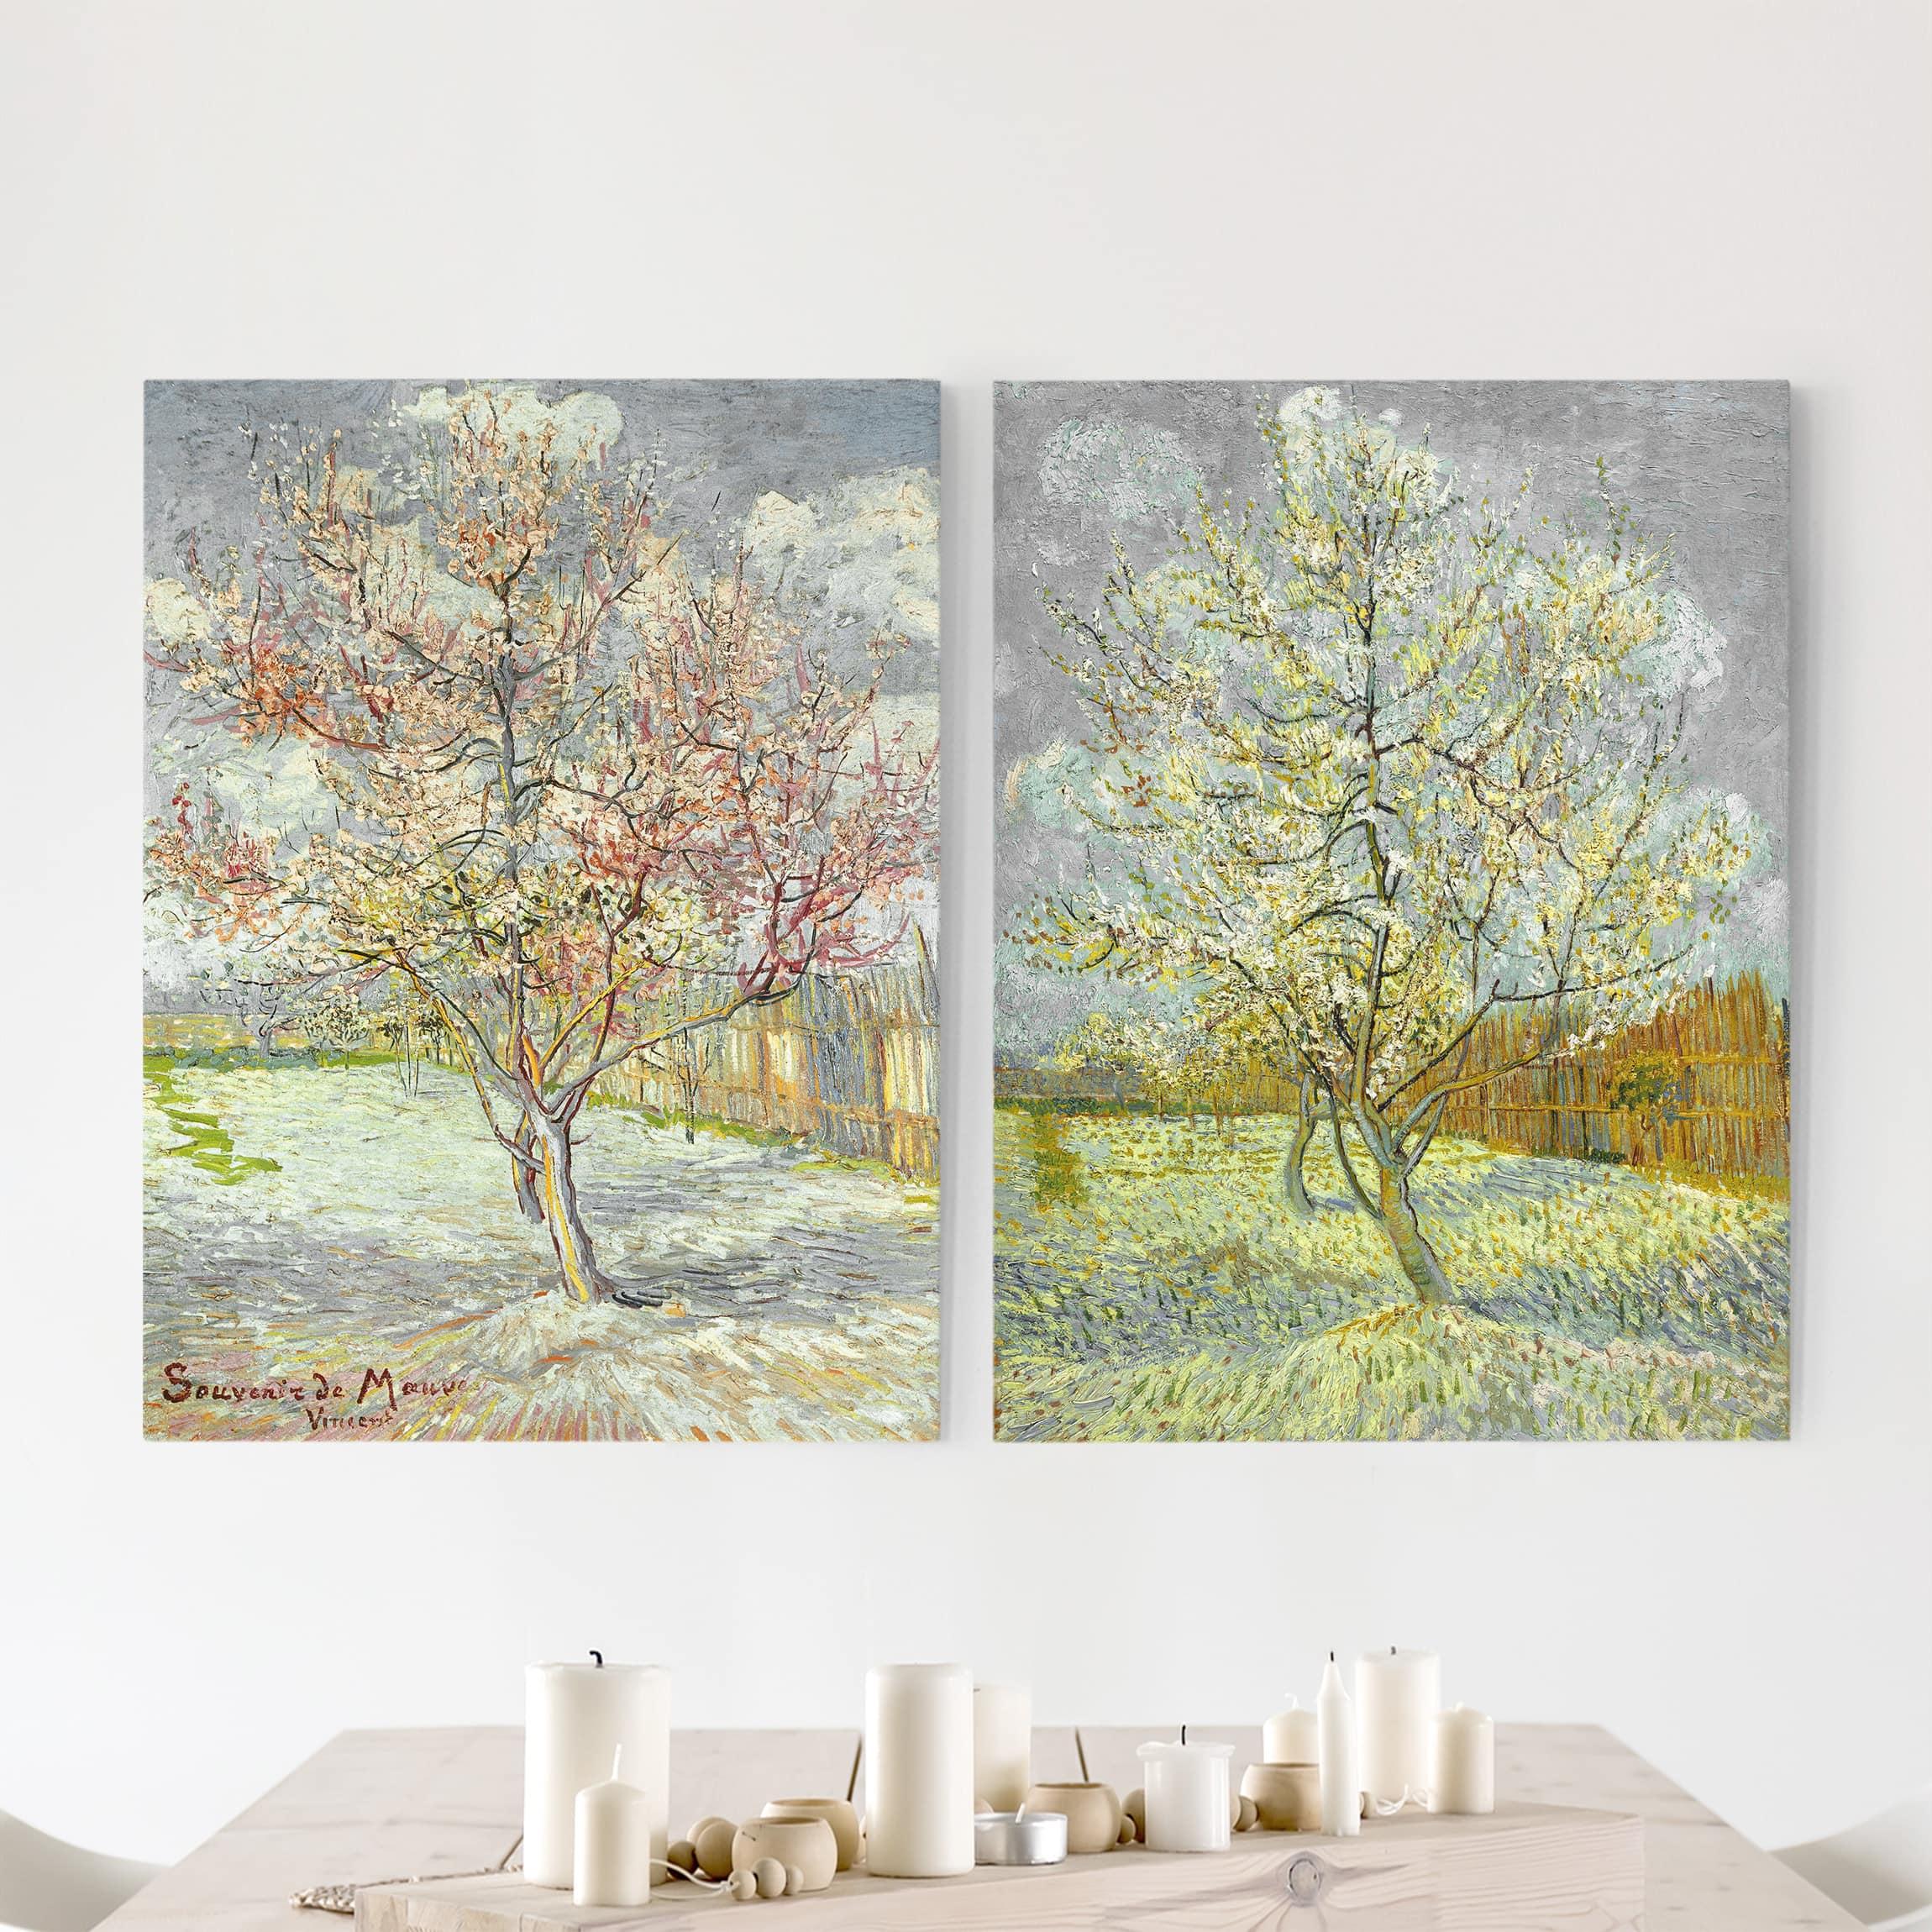 Dvojdielny obraz Vincent Van Gogh - Ovocný strom v záhrade 4:3